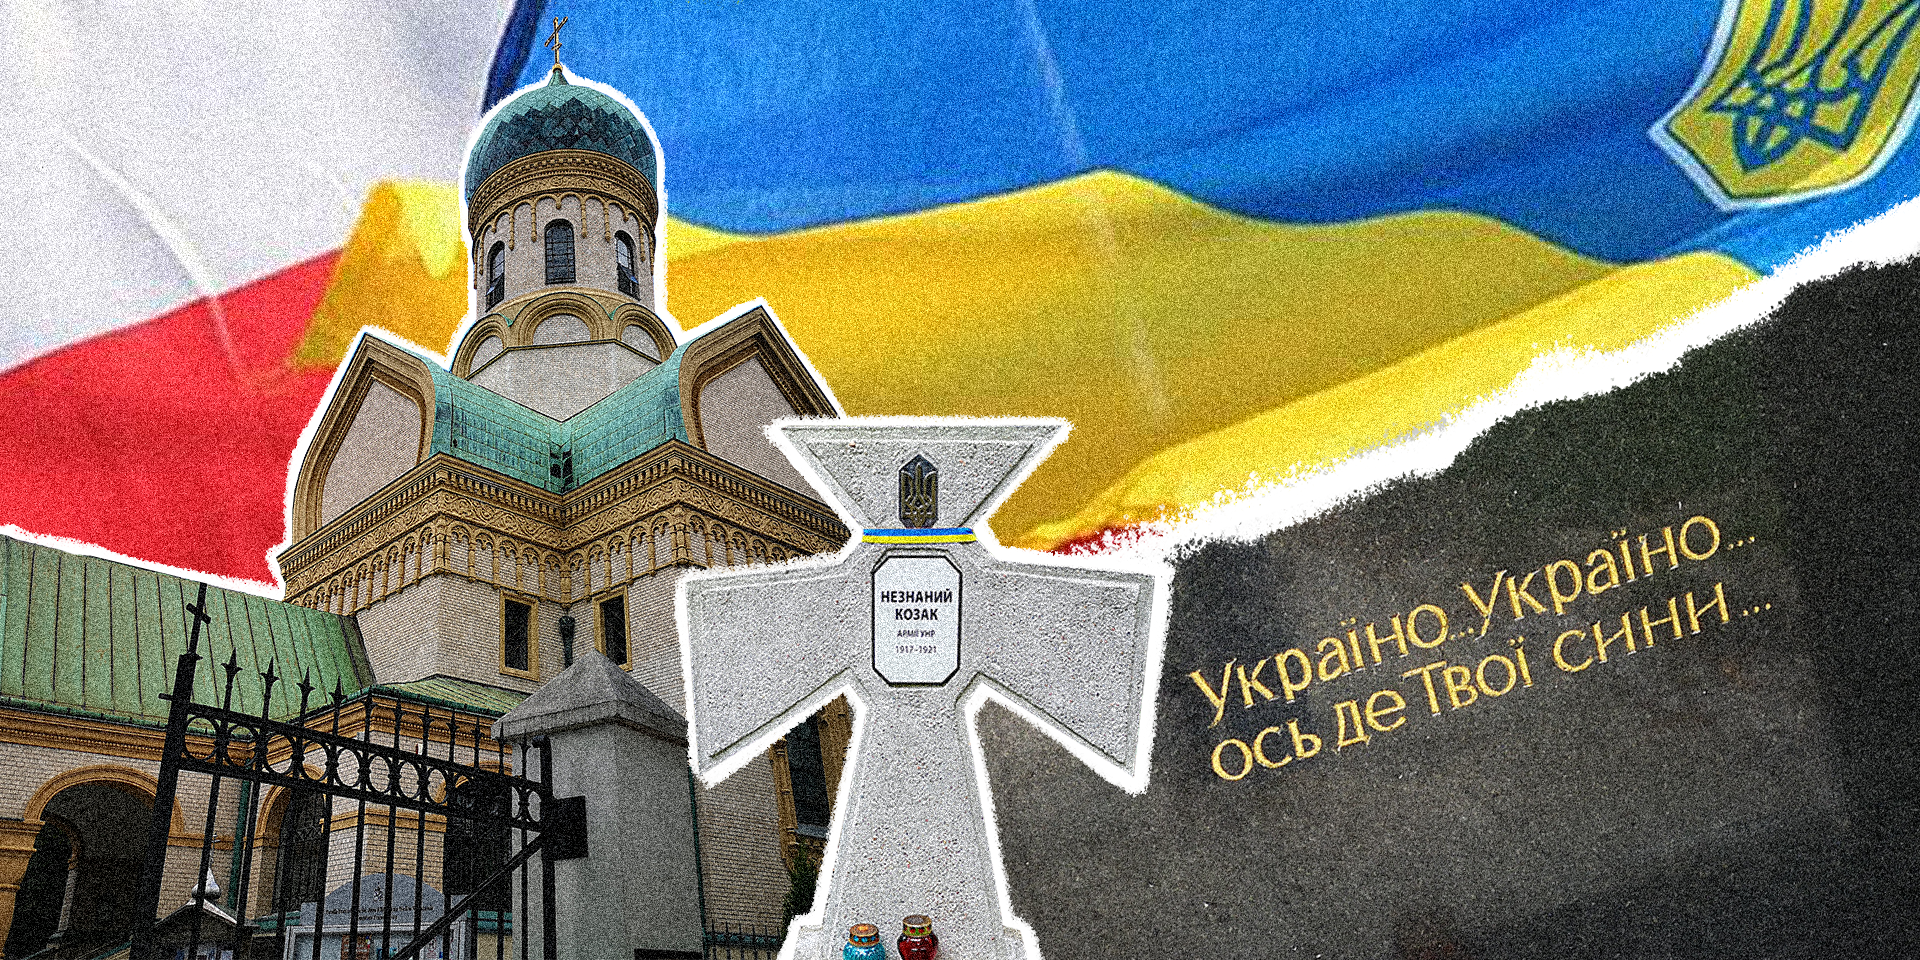 “Україно, Україно, ось де твої сини”: могили воїнів армії УНР у Варшаві